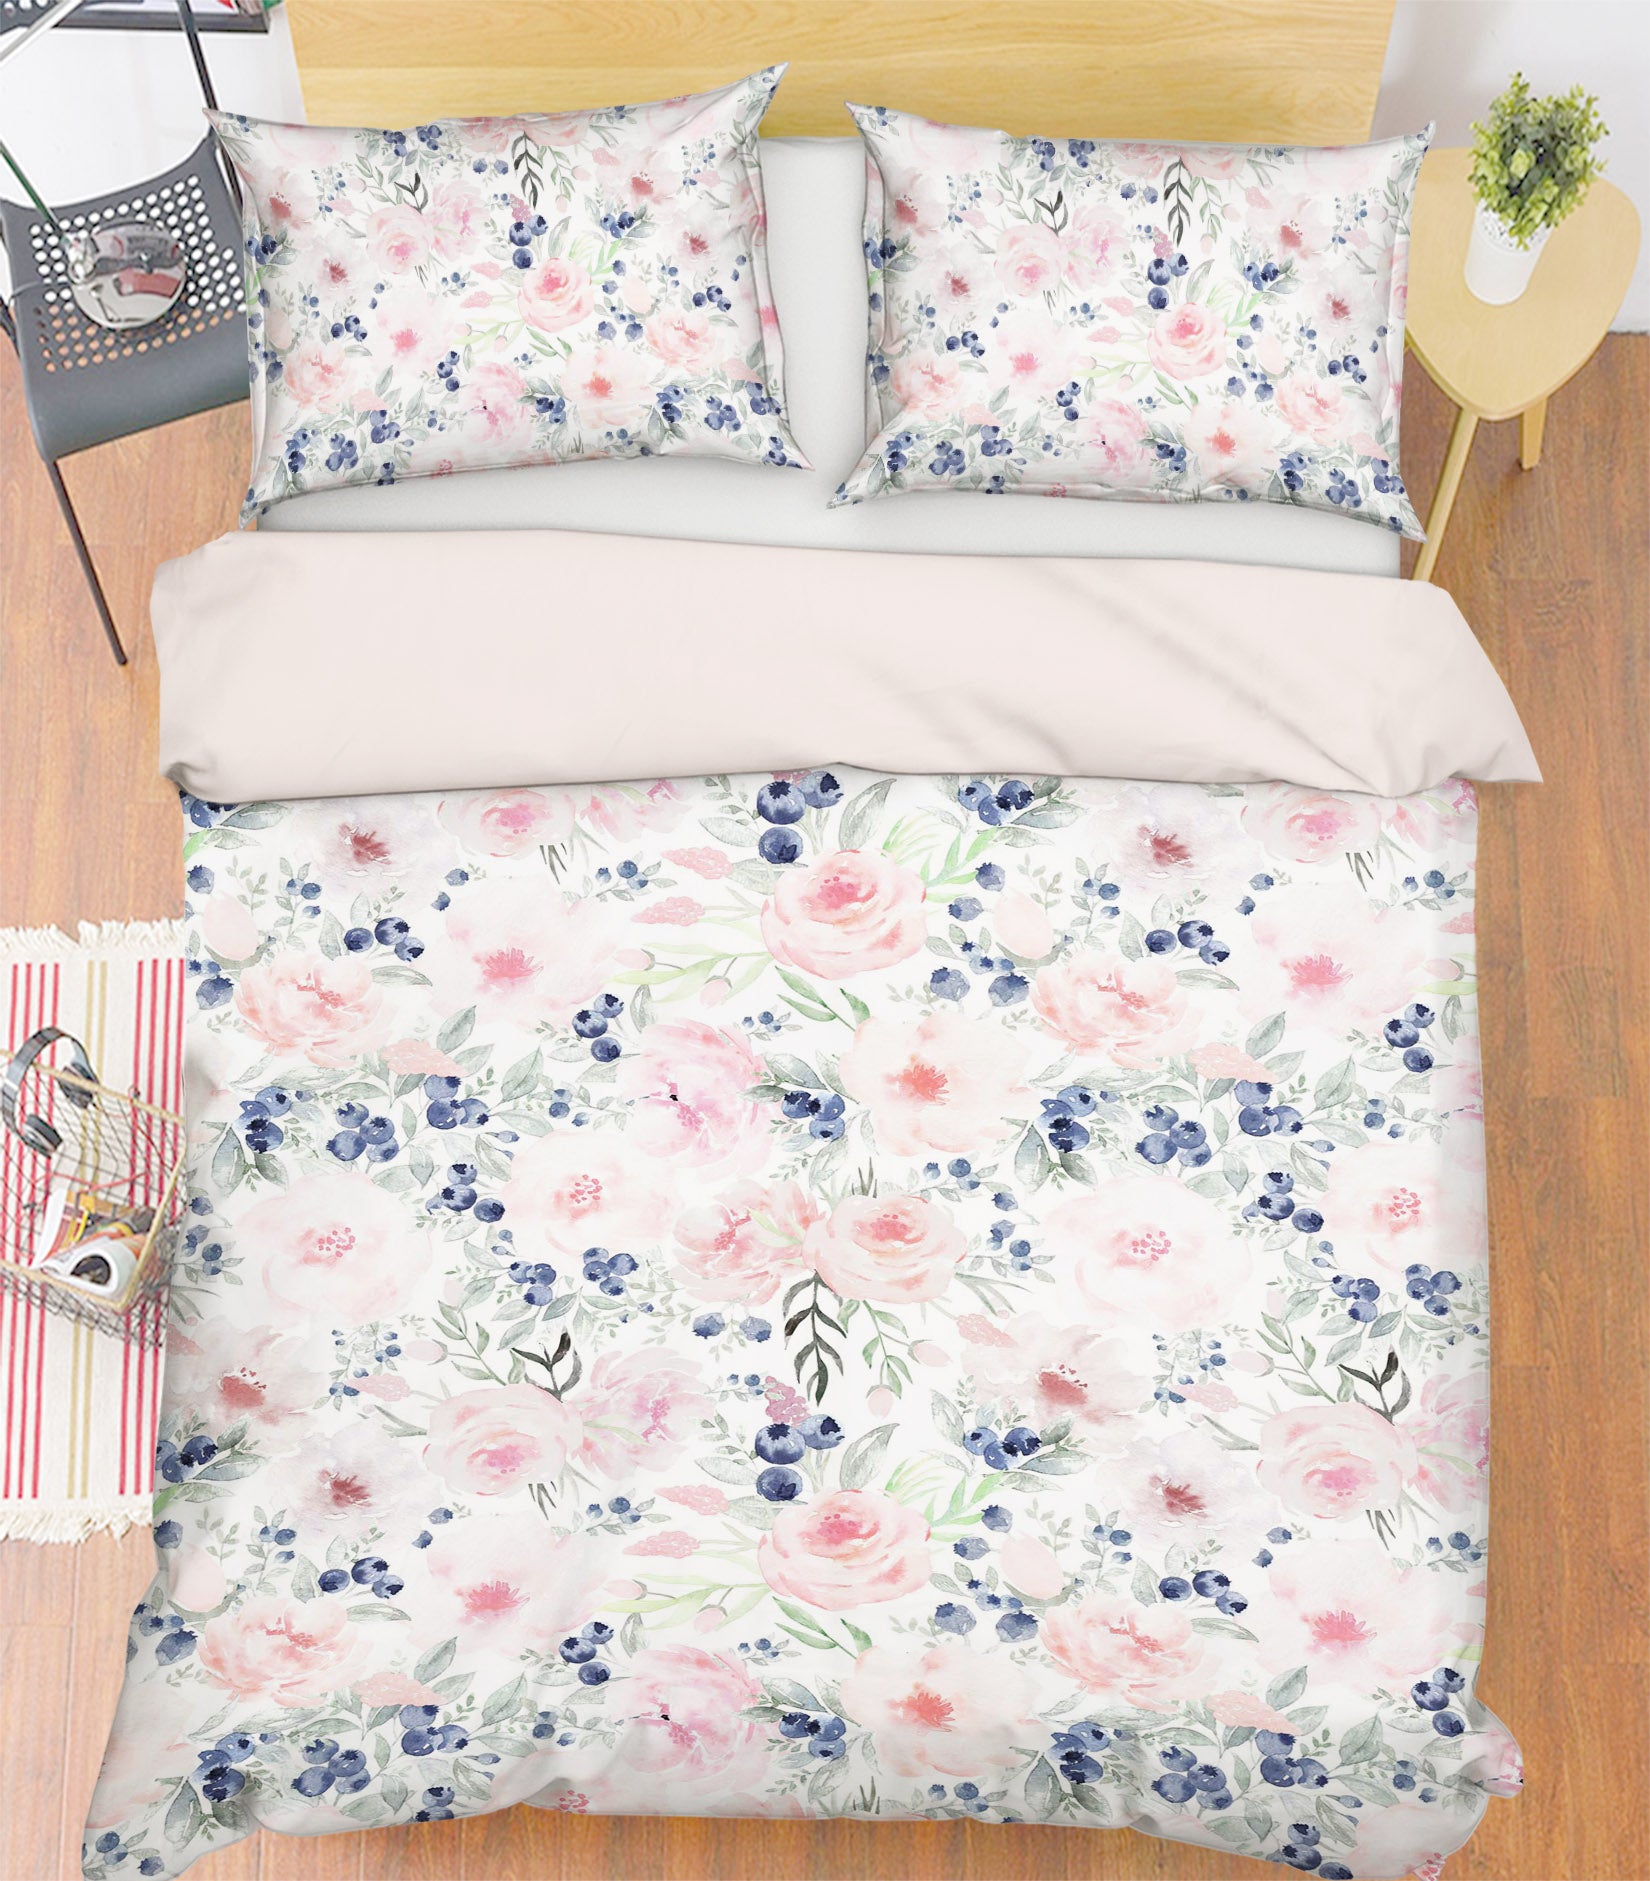 3D Flowers 18217 Uta Naumann Bedding Bed Pillowcases Quilt